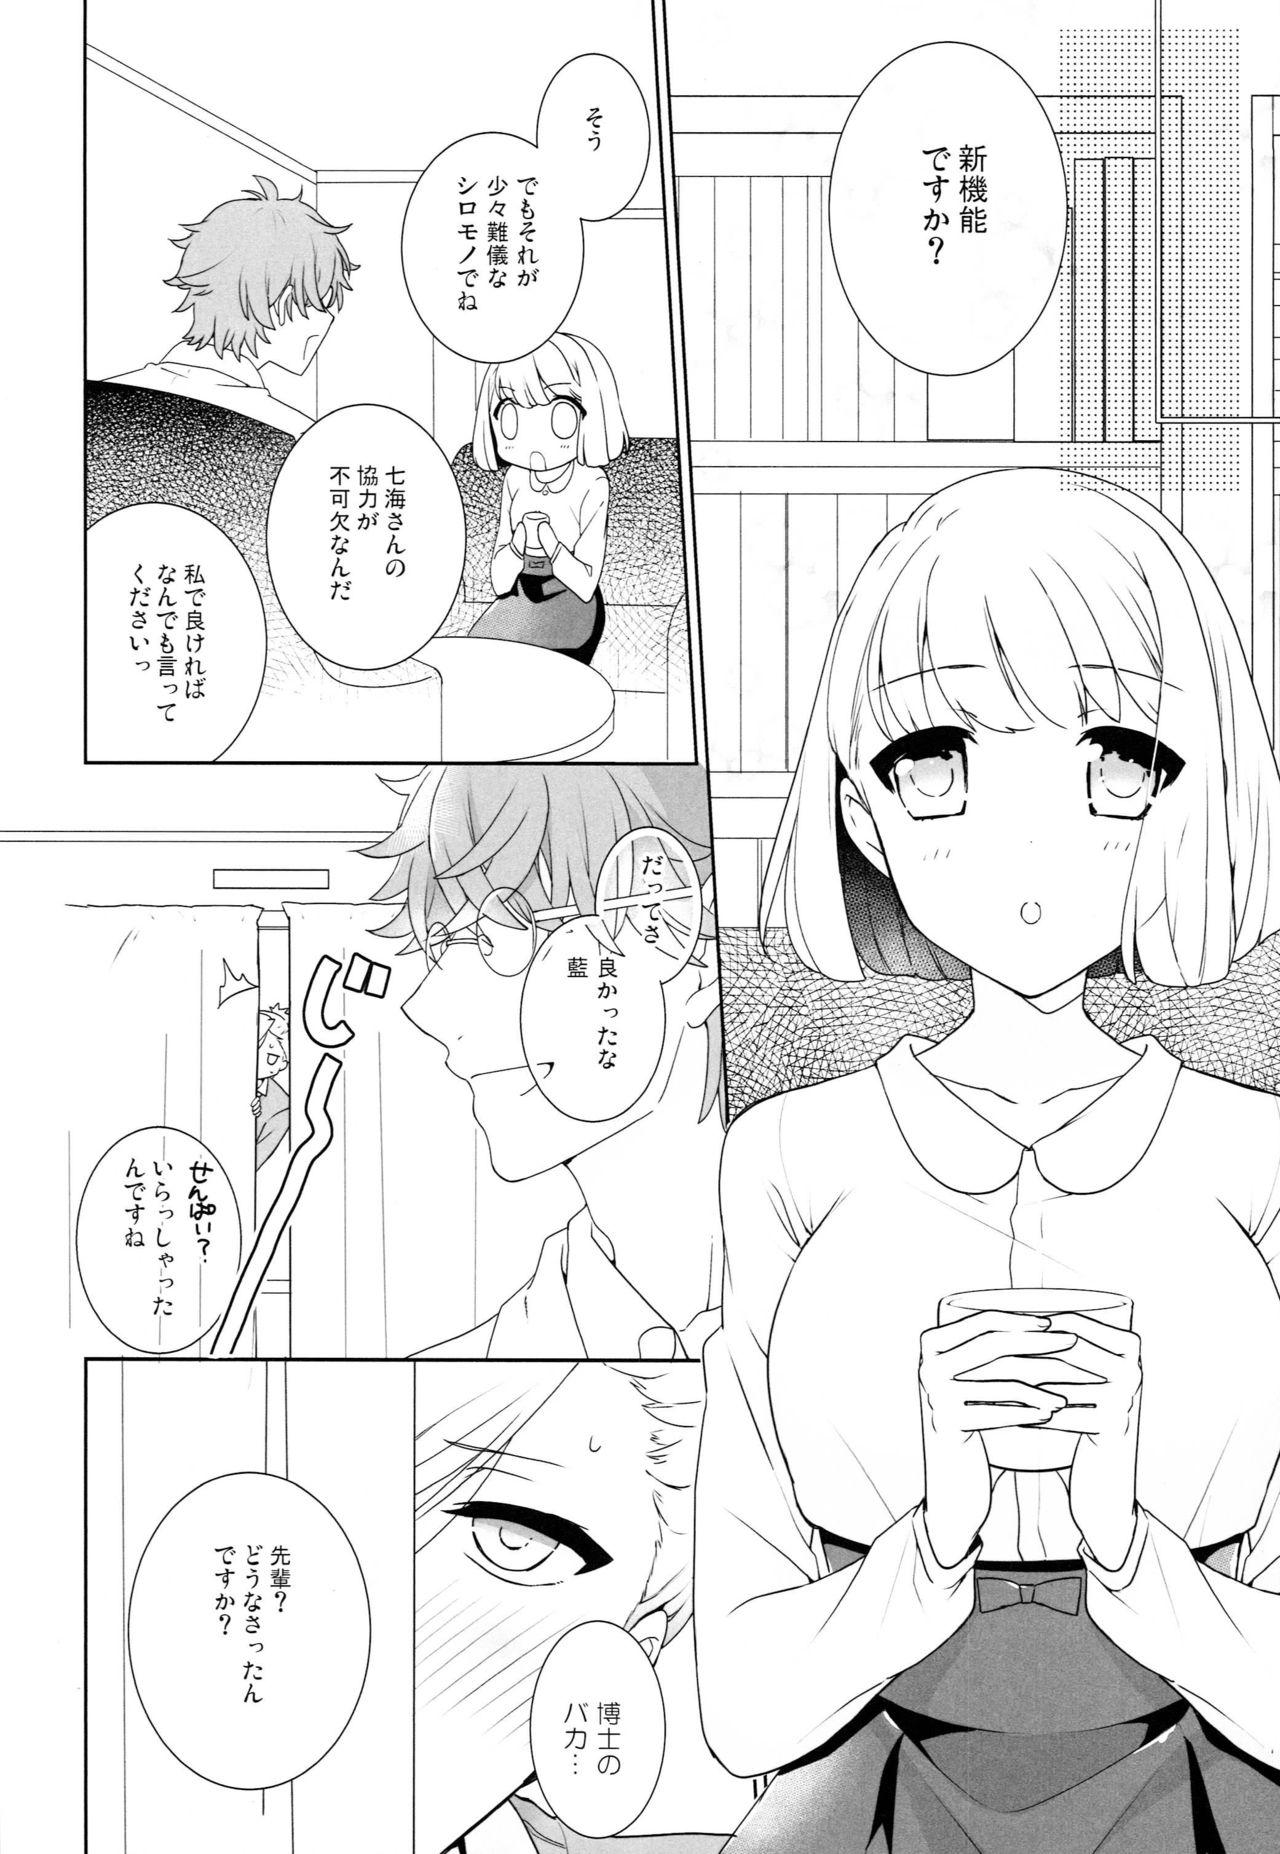 Masterbate Korekara Wonderland - Uta no prince-sama Gay Shop - Page 5